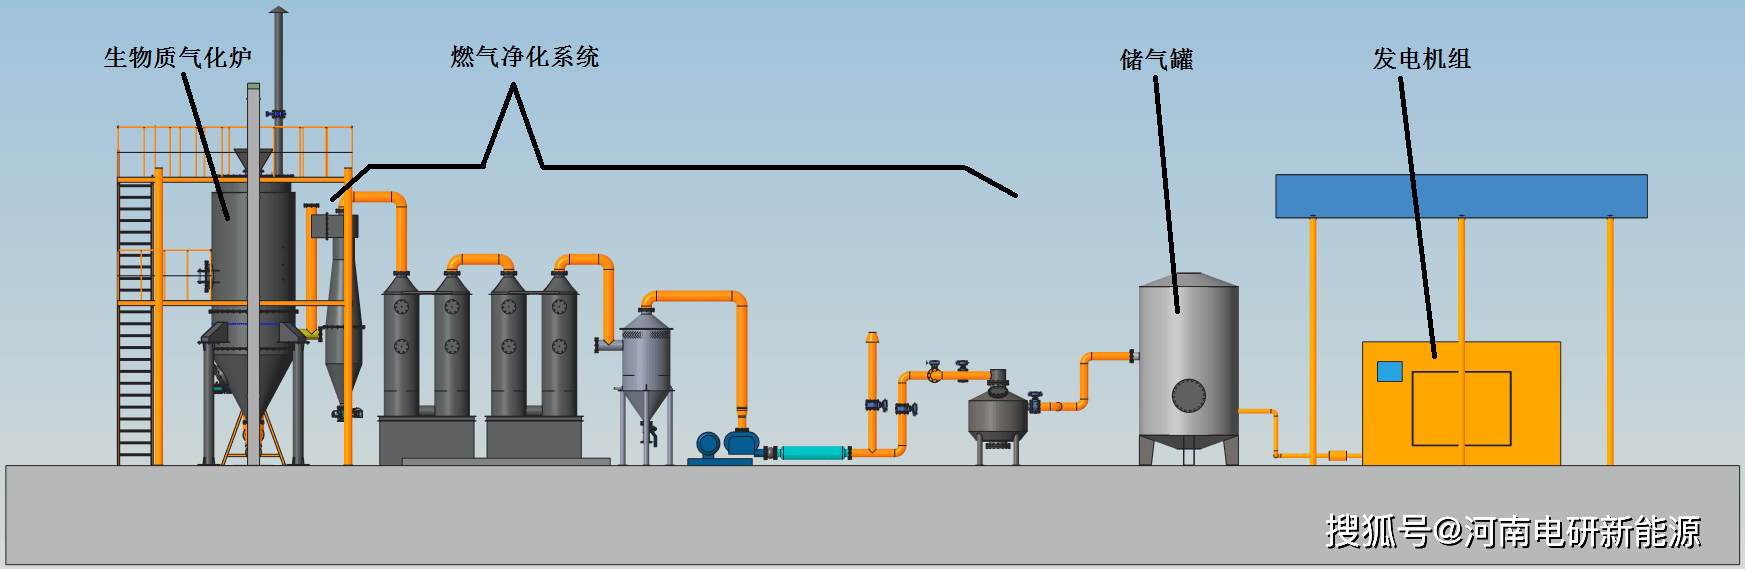 生物质气化发电工艺流程